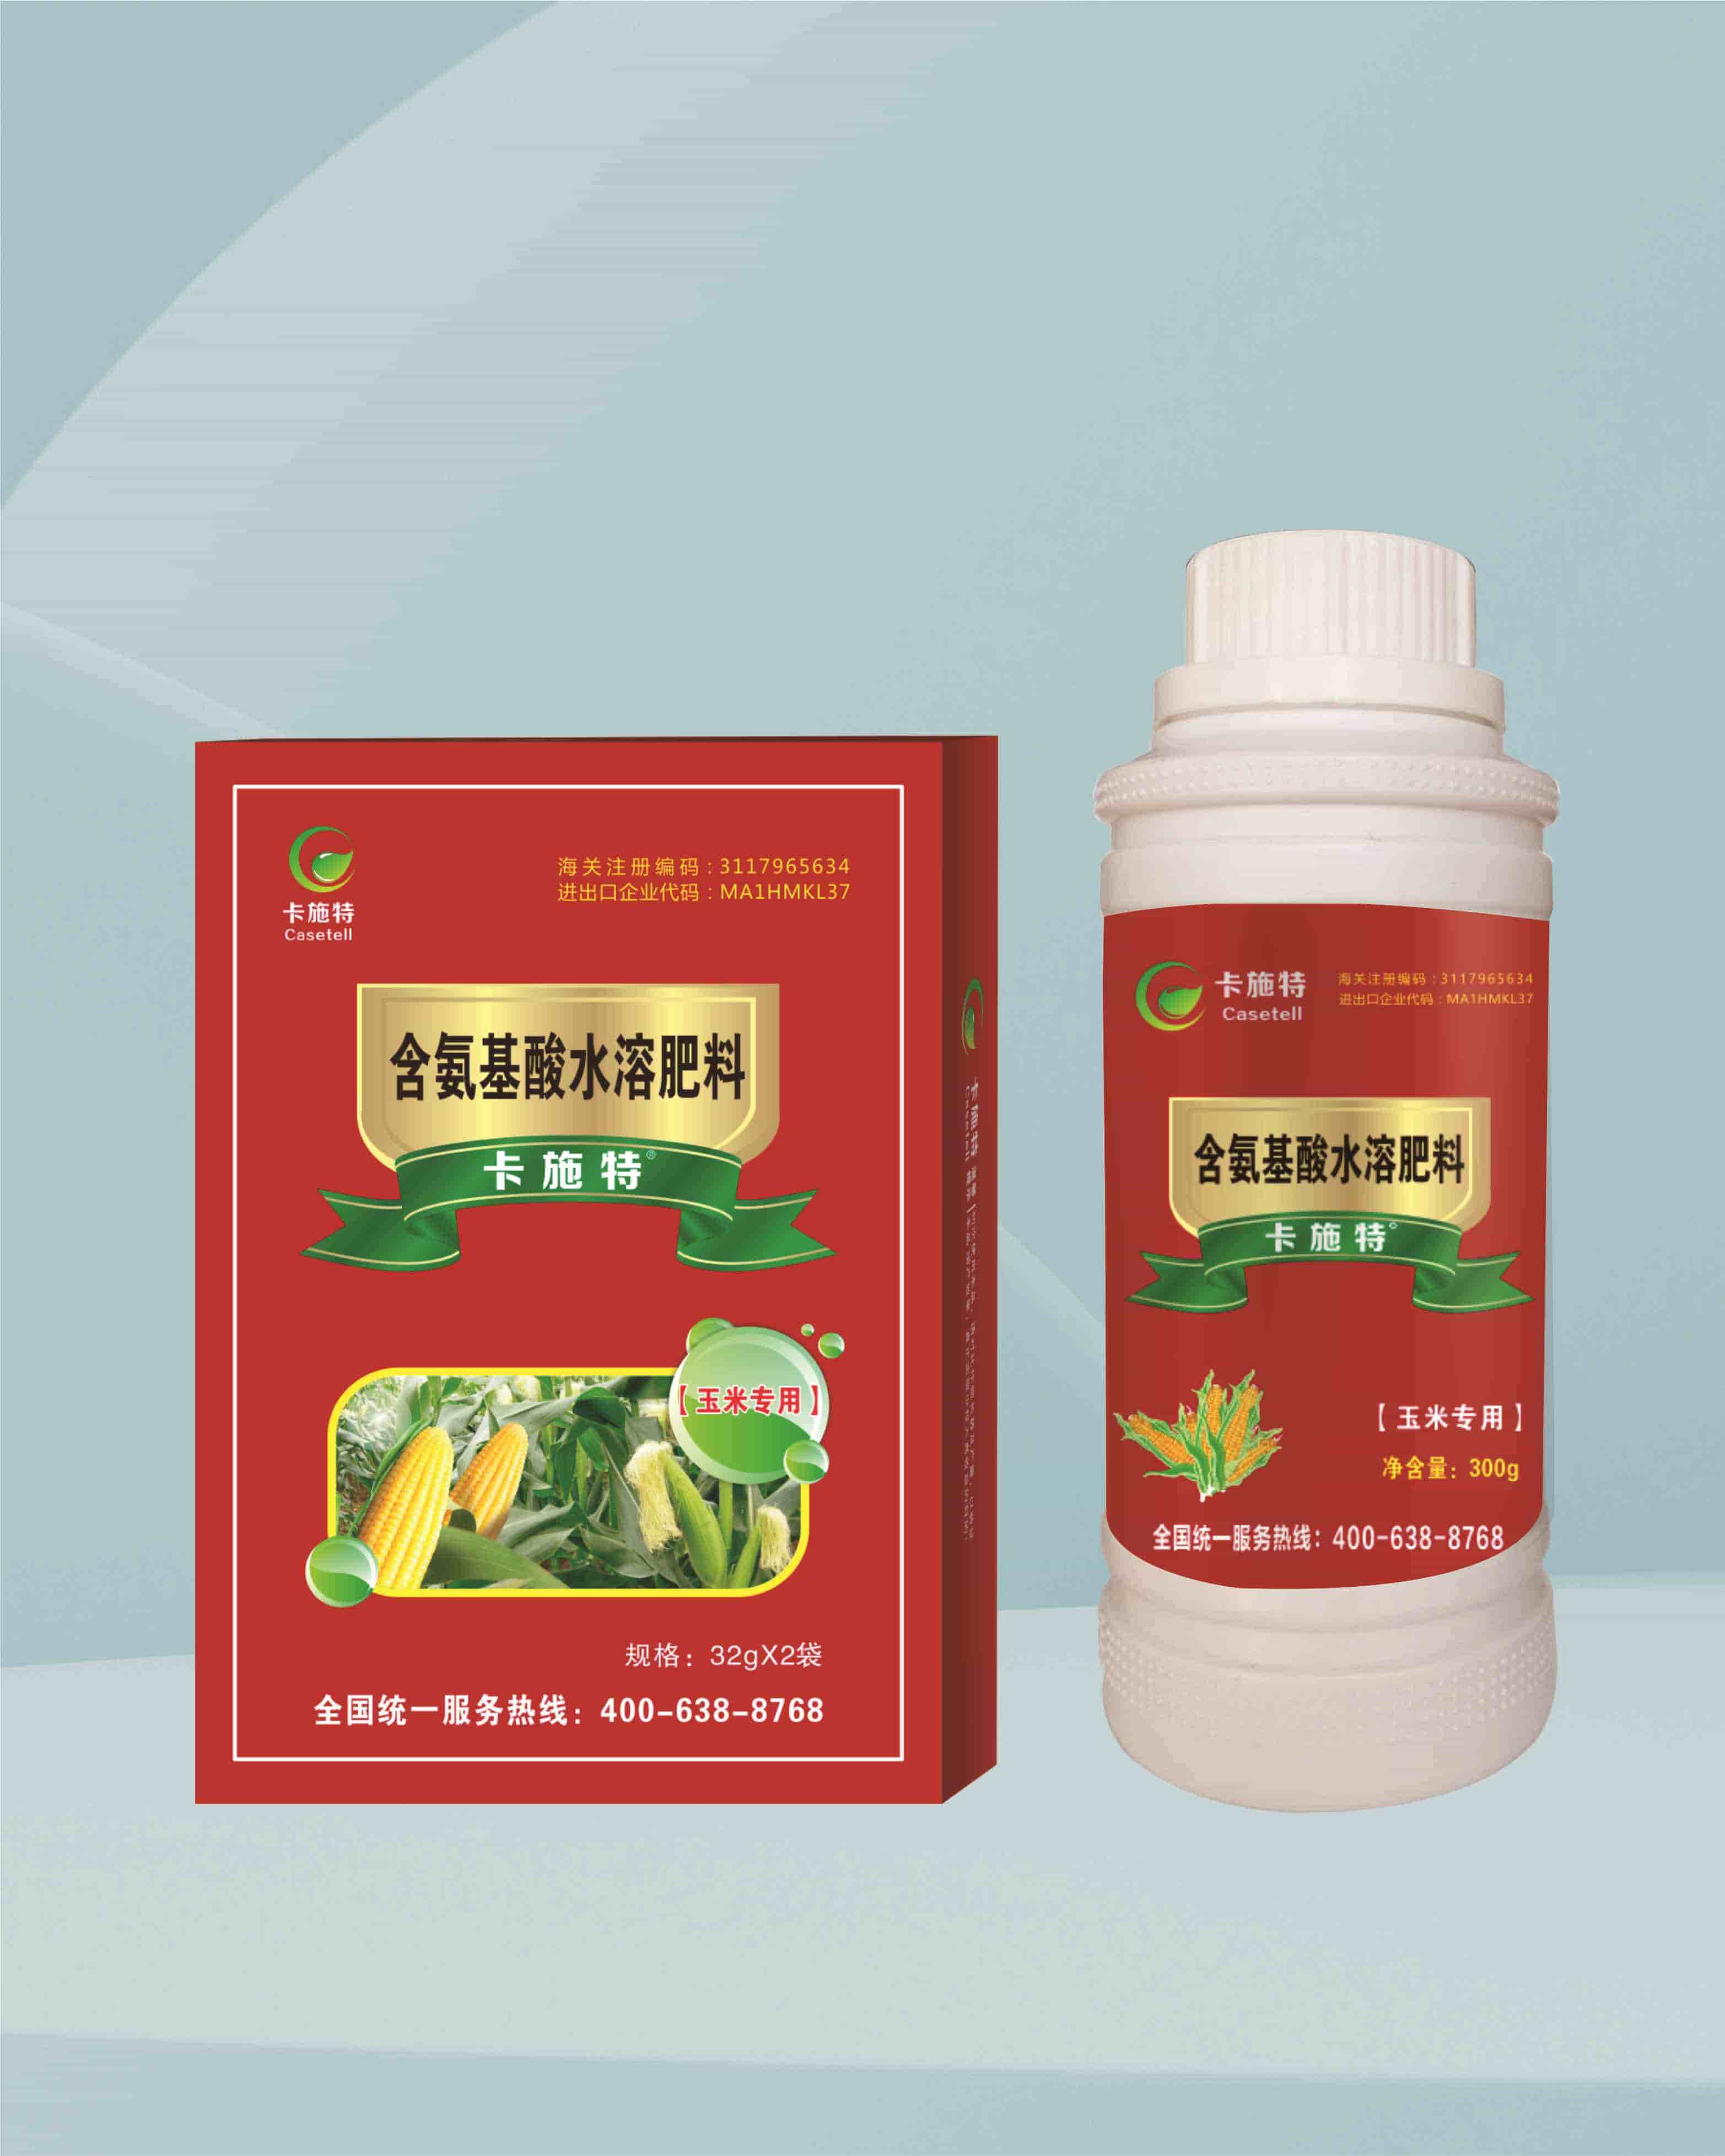 叶菜专用 - 叶面肥系列 - 蕾诺（北京）生物科技有限公司官网丨蕾诺特种肥丨蕾诺特种肥料：特种叶面肥、特种冲施肥、特种水溶肥